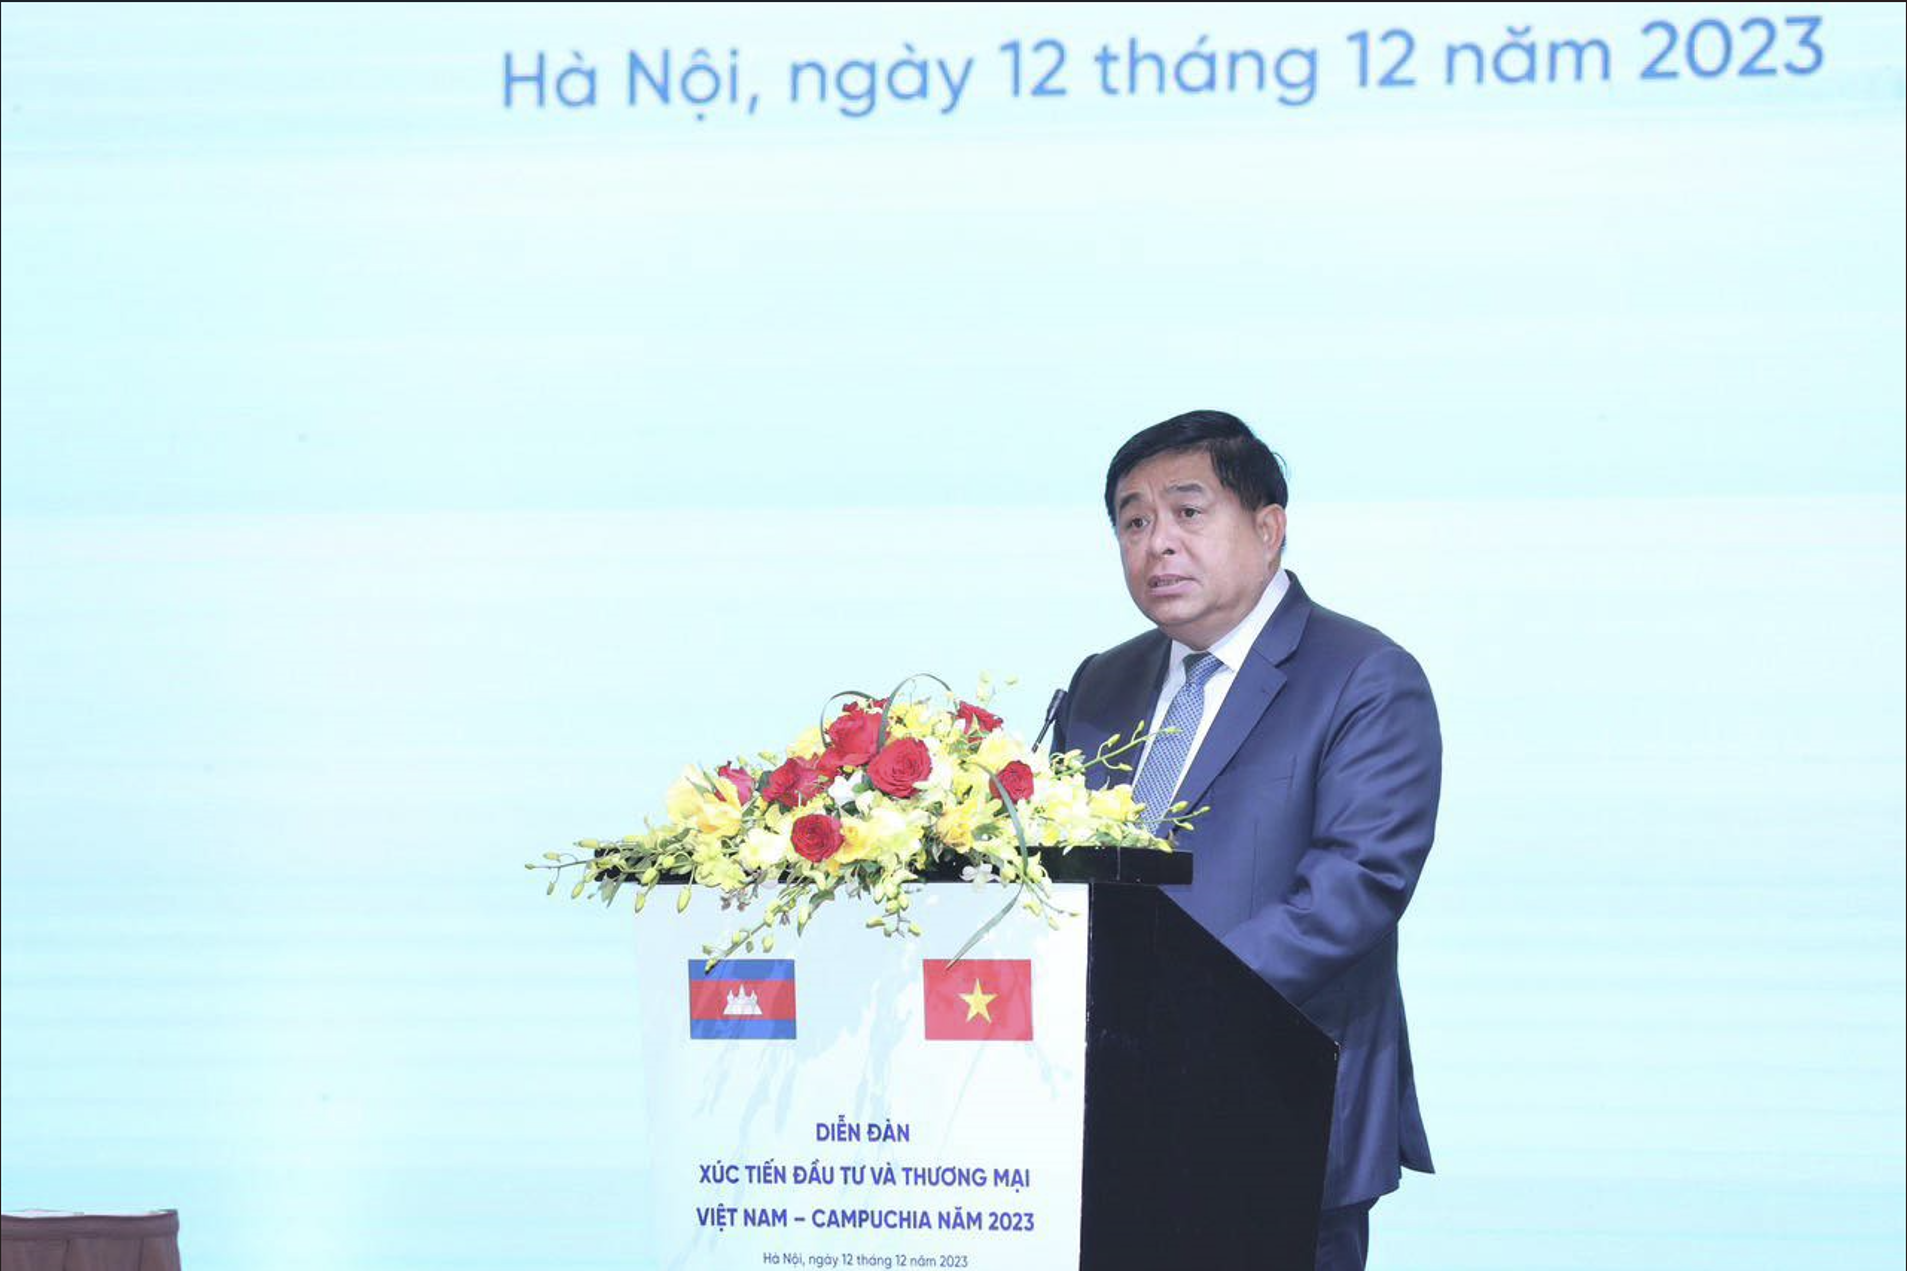 Diễn đàn Xúc tiến Đầu tư và Thương mại Việt Nam - Campuchia